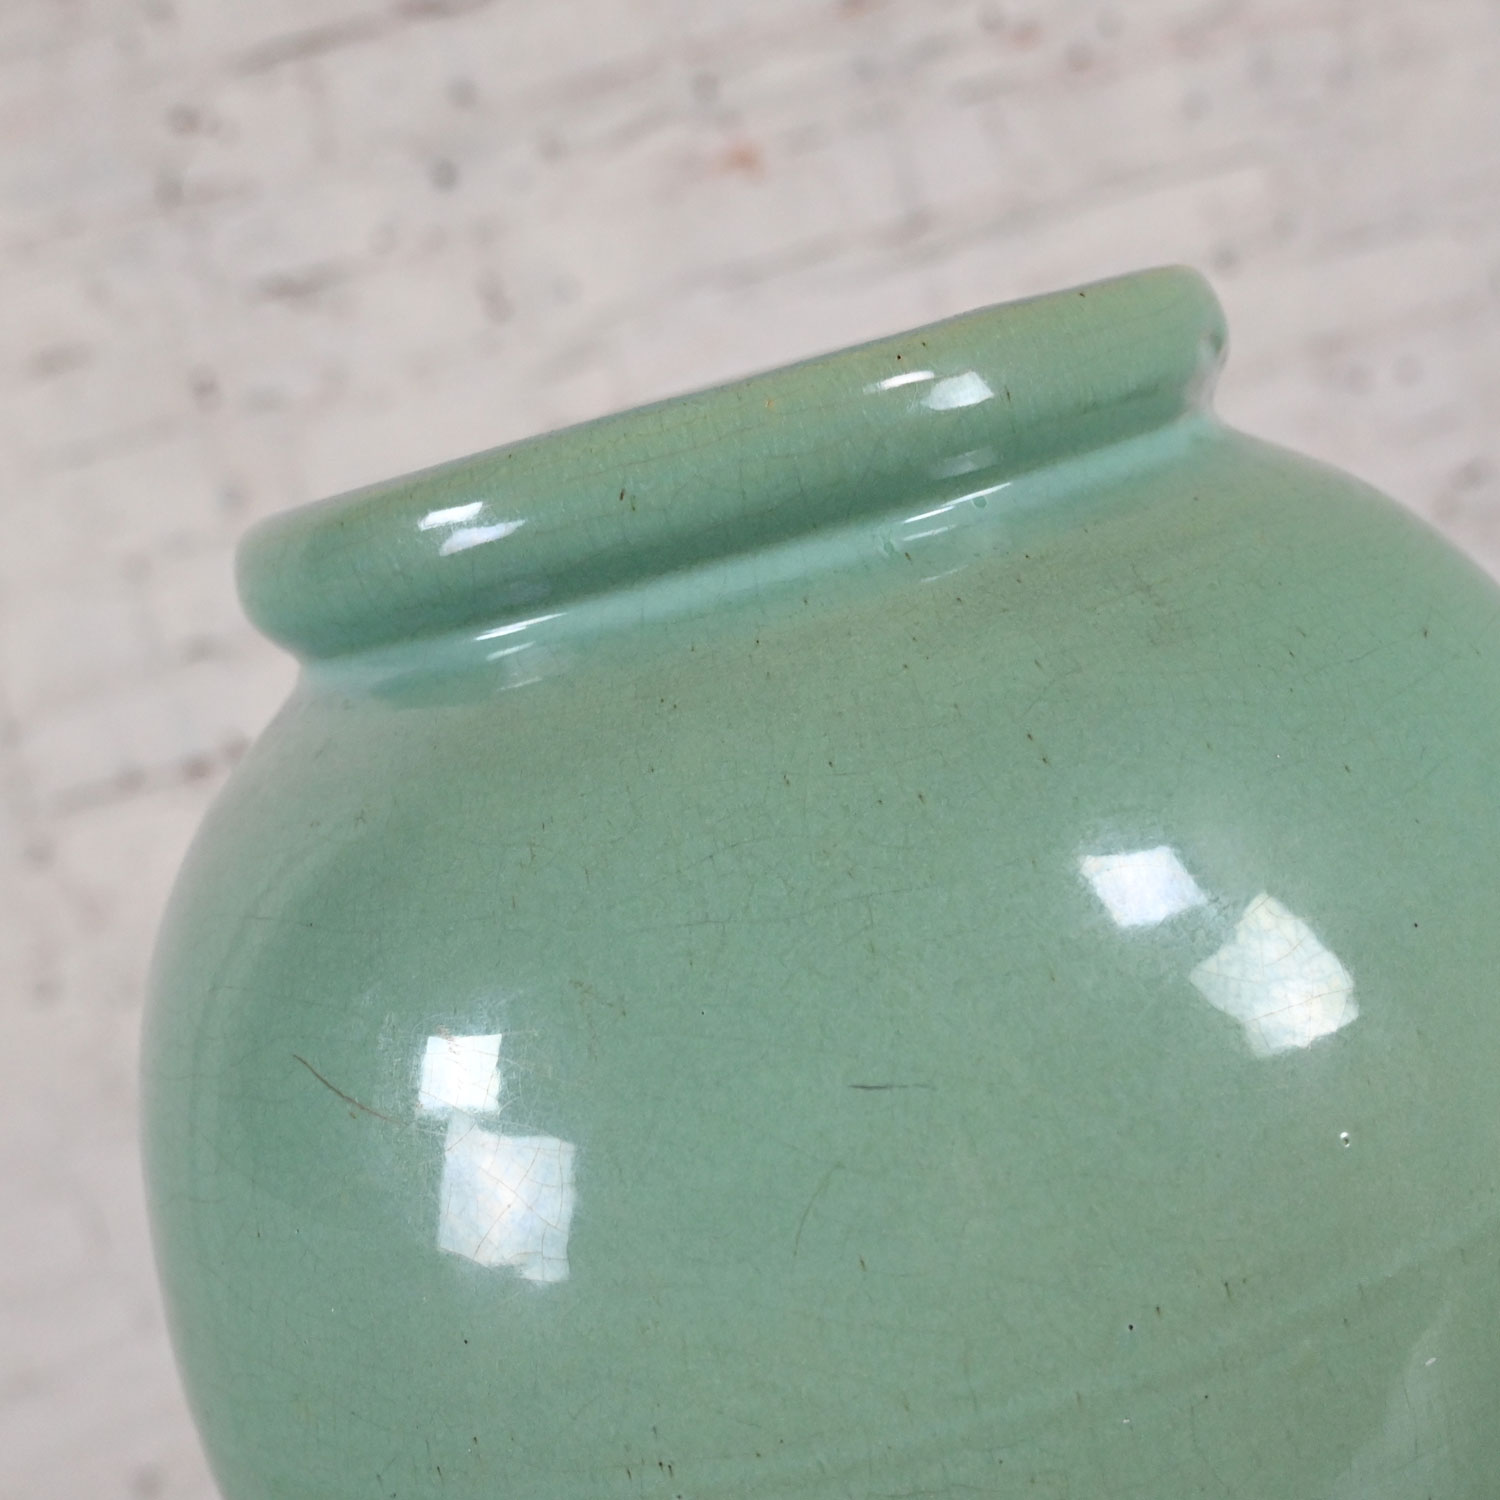 Vintage Large Arts & Crafts Sea Green Crackle Glazed Urn Shaped Floor Vase